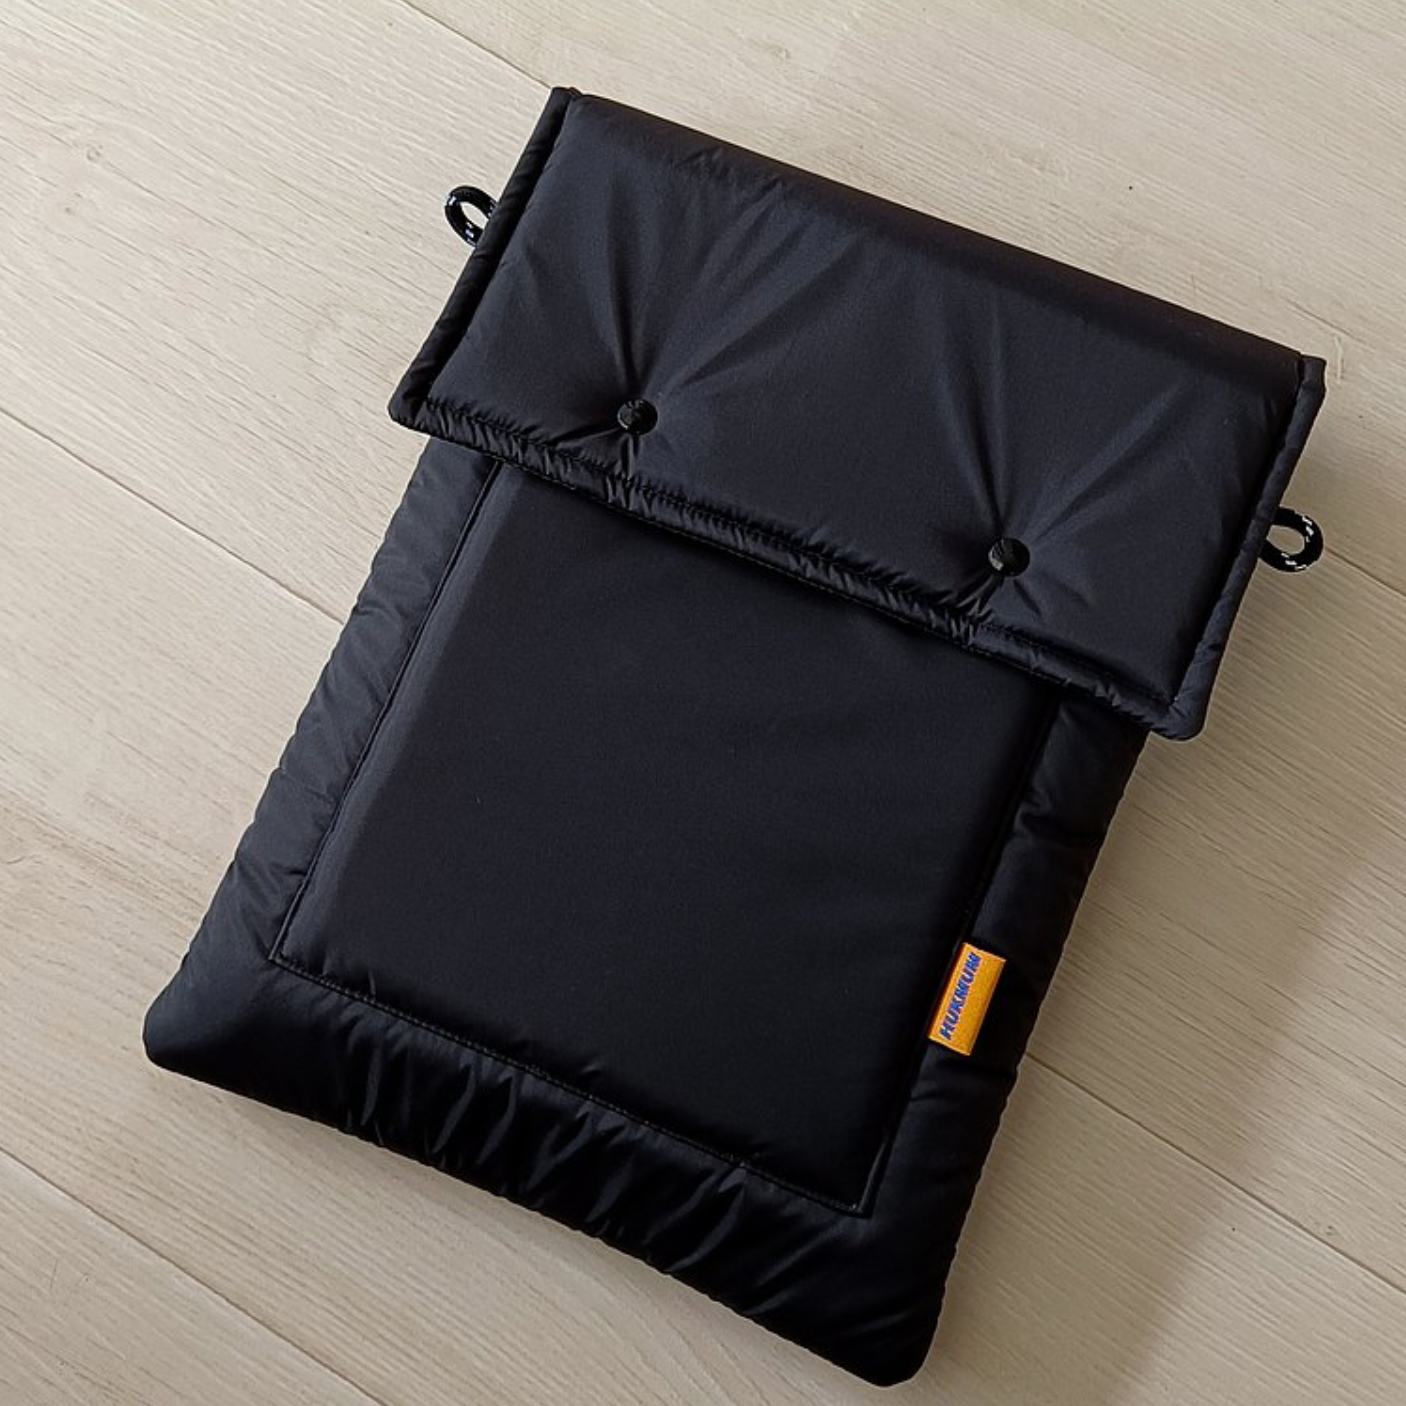 HUKMUM - 13" Tabtab Laptop Bag (Black)